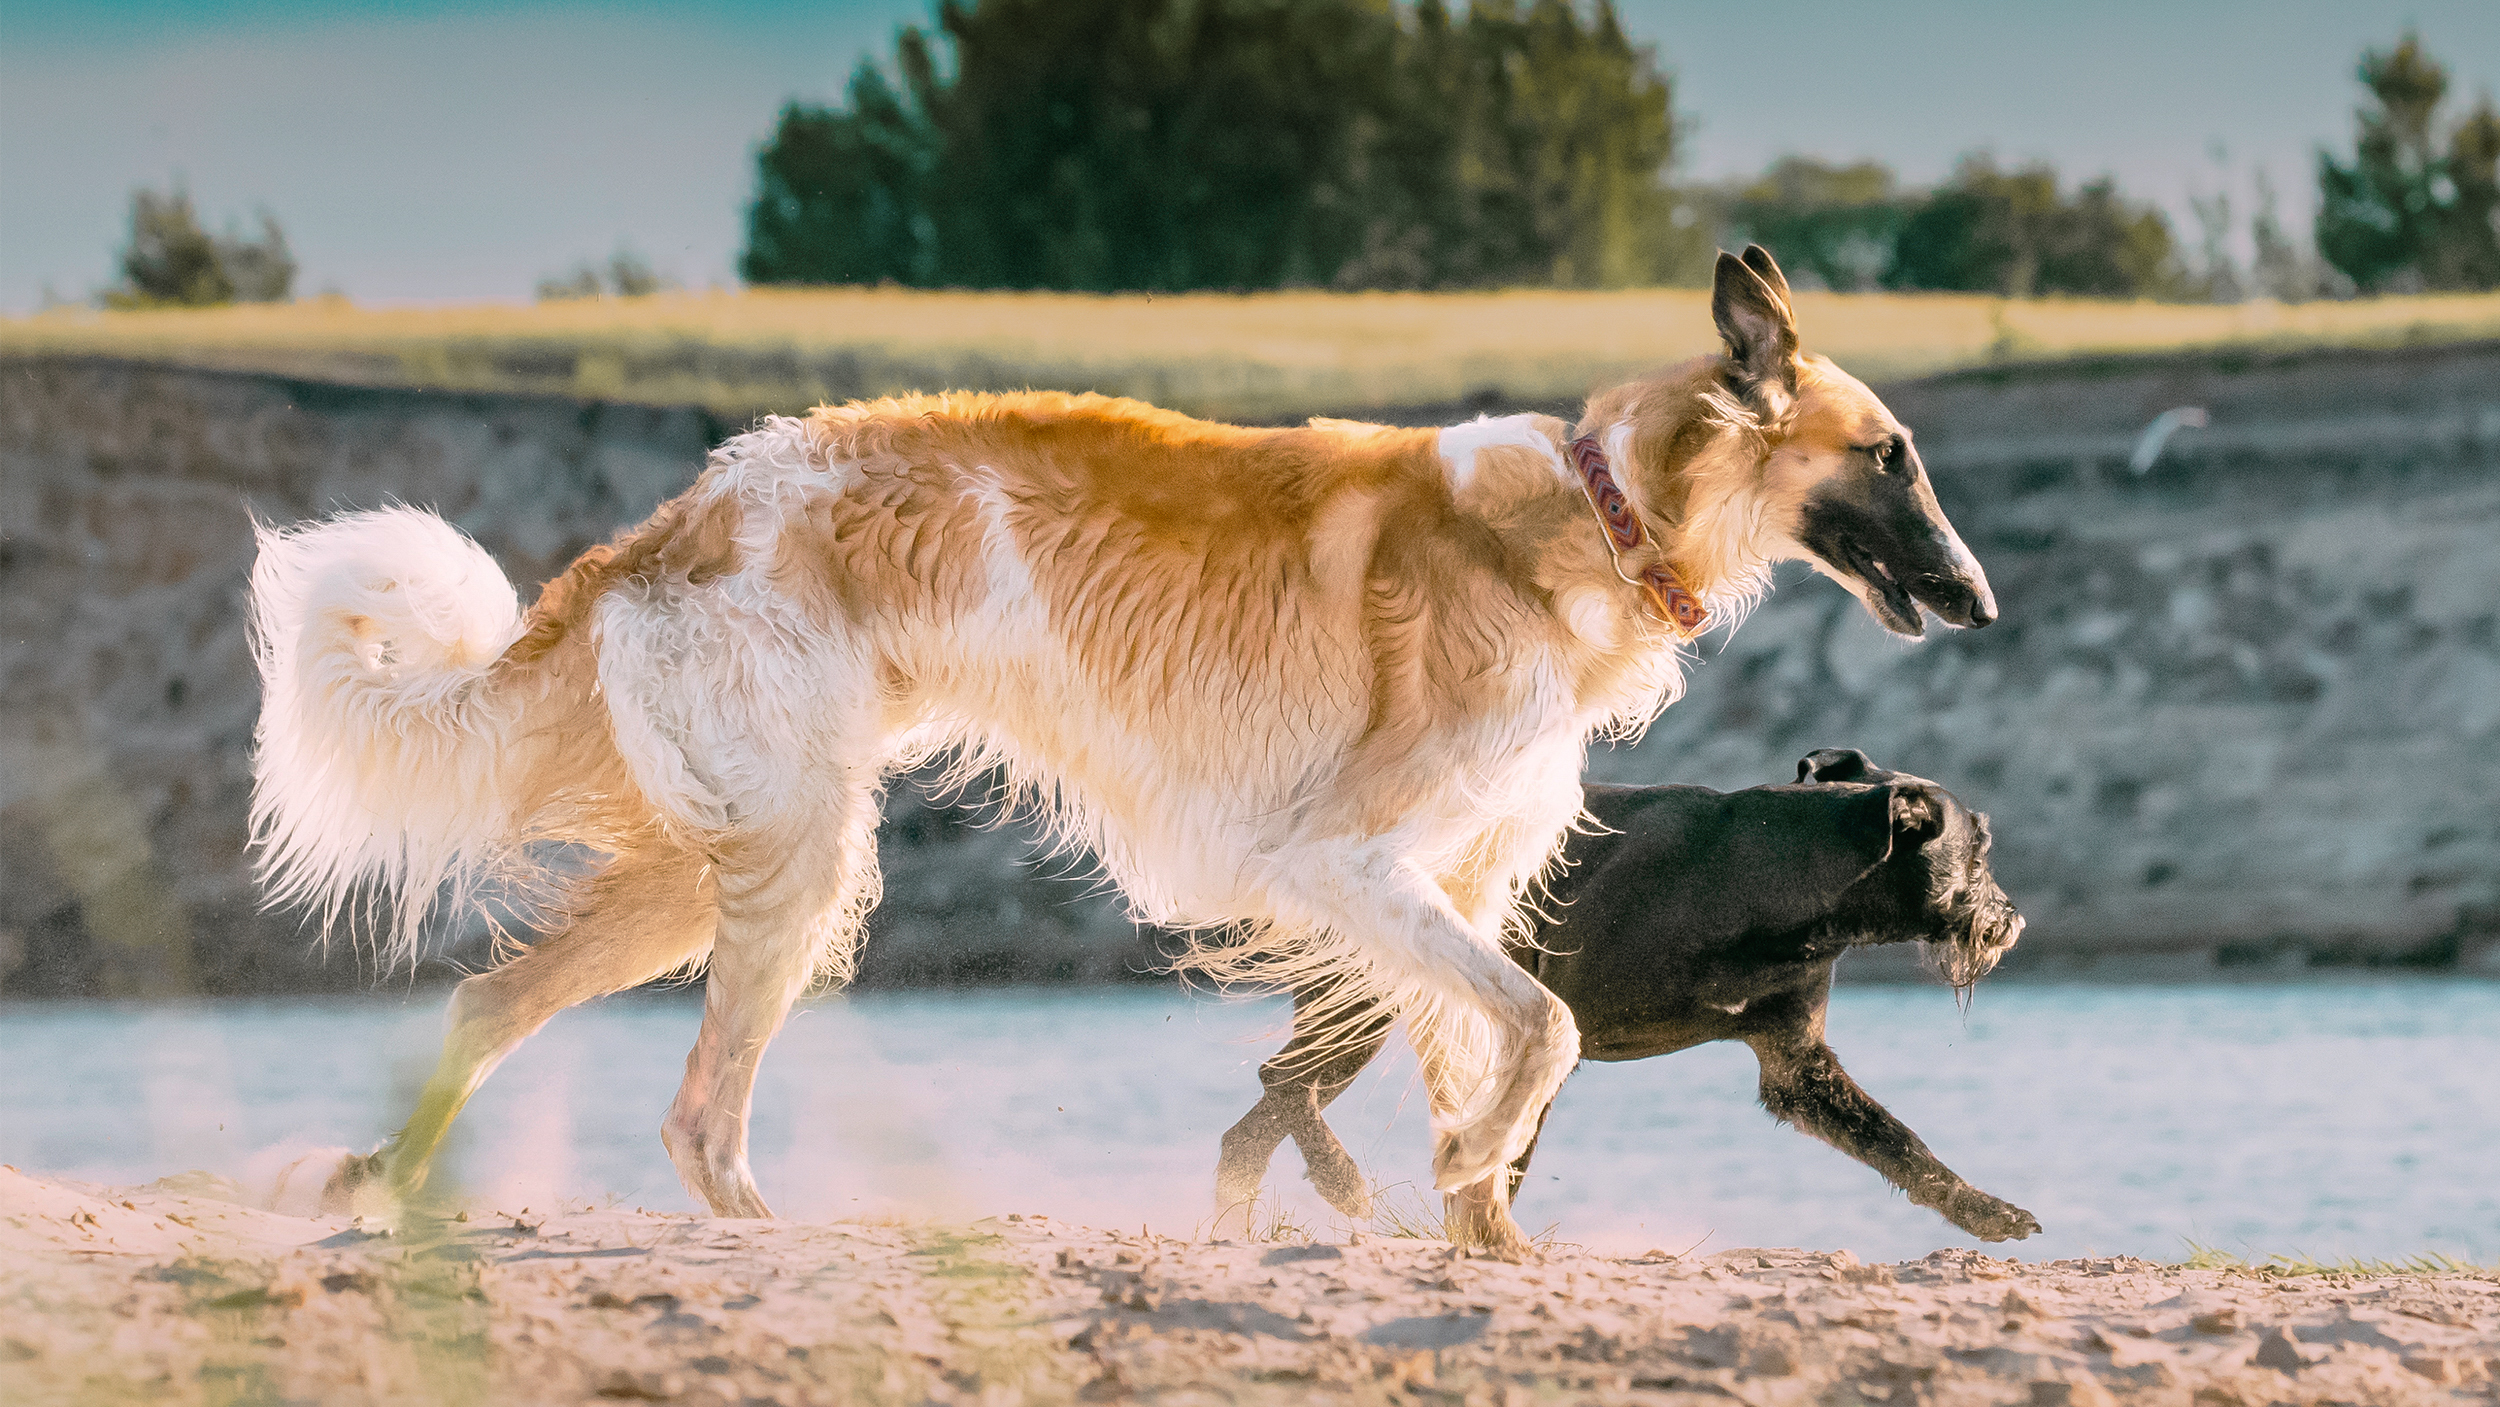 Borzoi adulto a correr na areia da margem de um rio com um cão preto mais pequeno.